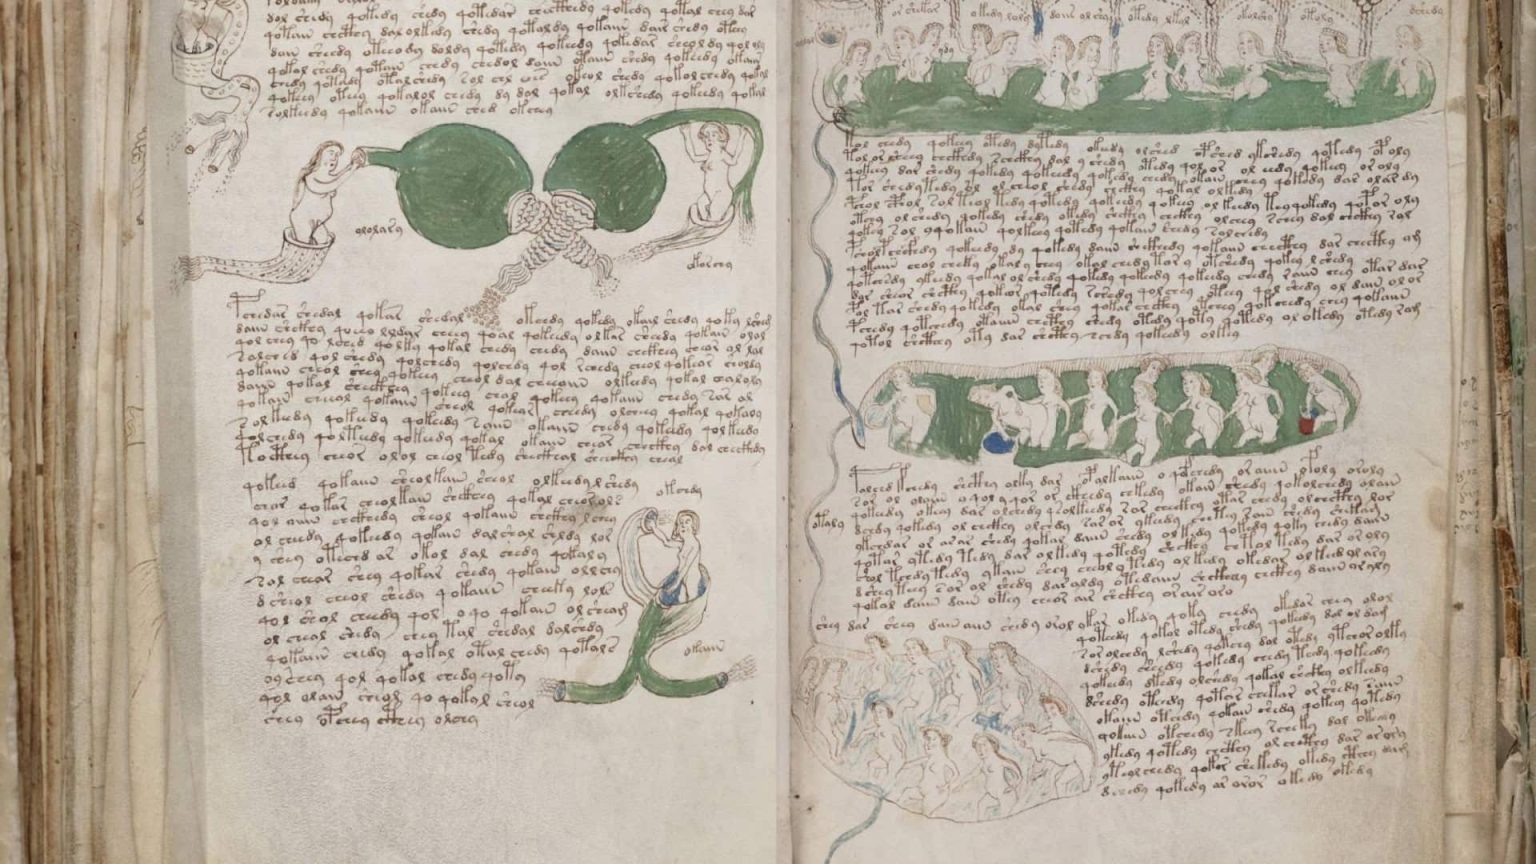 – 202404voynich manuscript rukopis voinicha rukopis voinich kniga